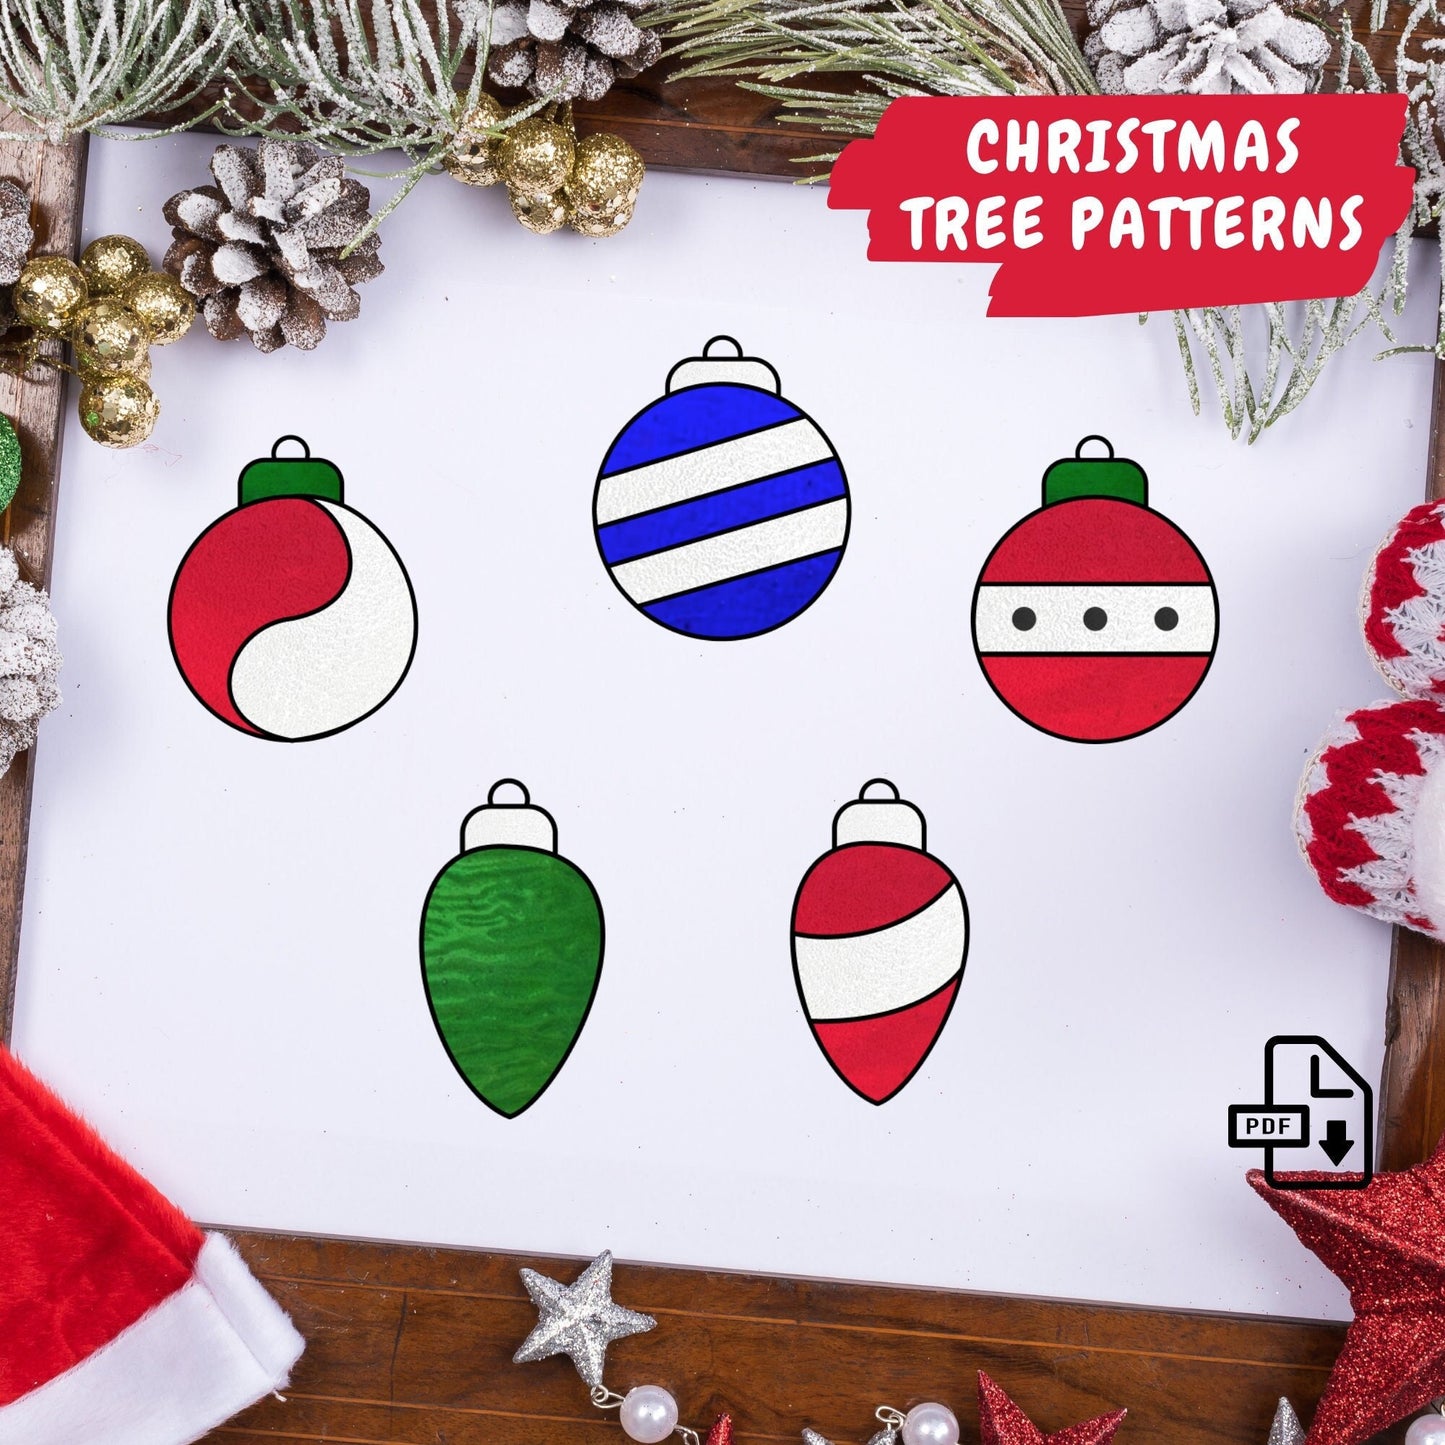 Diseño de adornos para árboles de Navidad • Patrones de árboles de Navidad para descargar